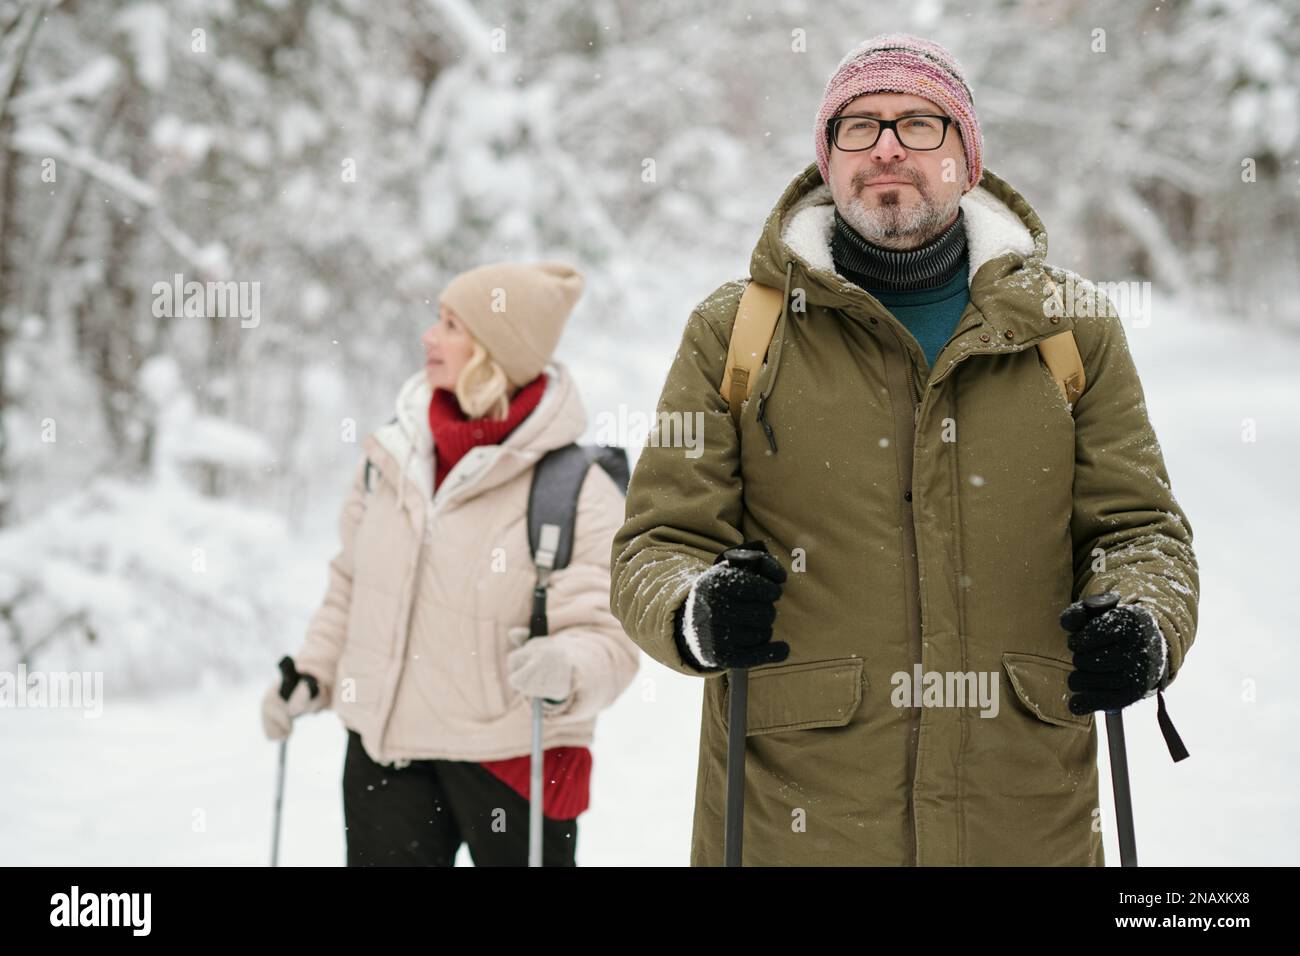 Reifer Mann in Winterbekleidung, der mit Wanderstöcken im schneebedeckten Wald spaziert, während seine Frau im Hintergrund steht Stockfoto